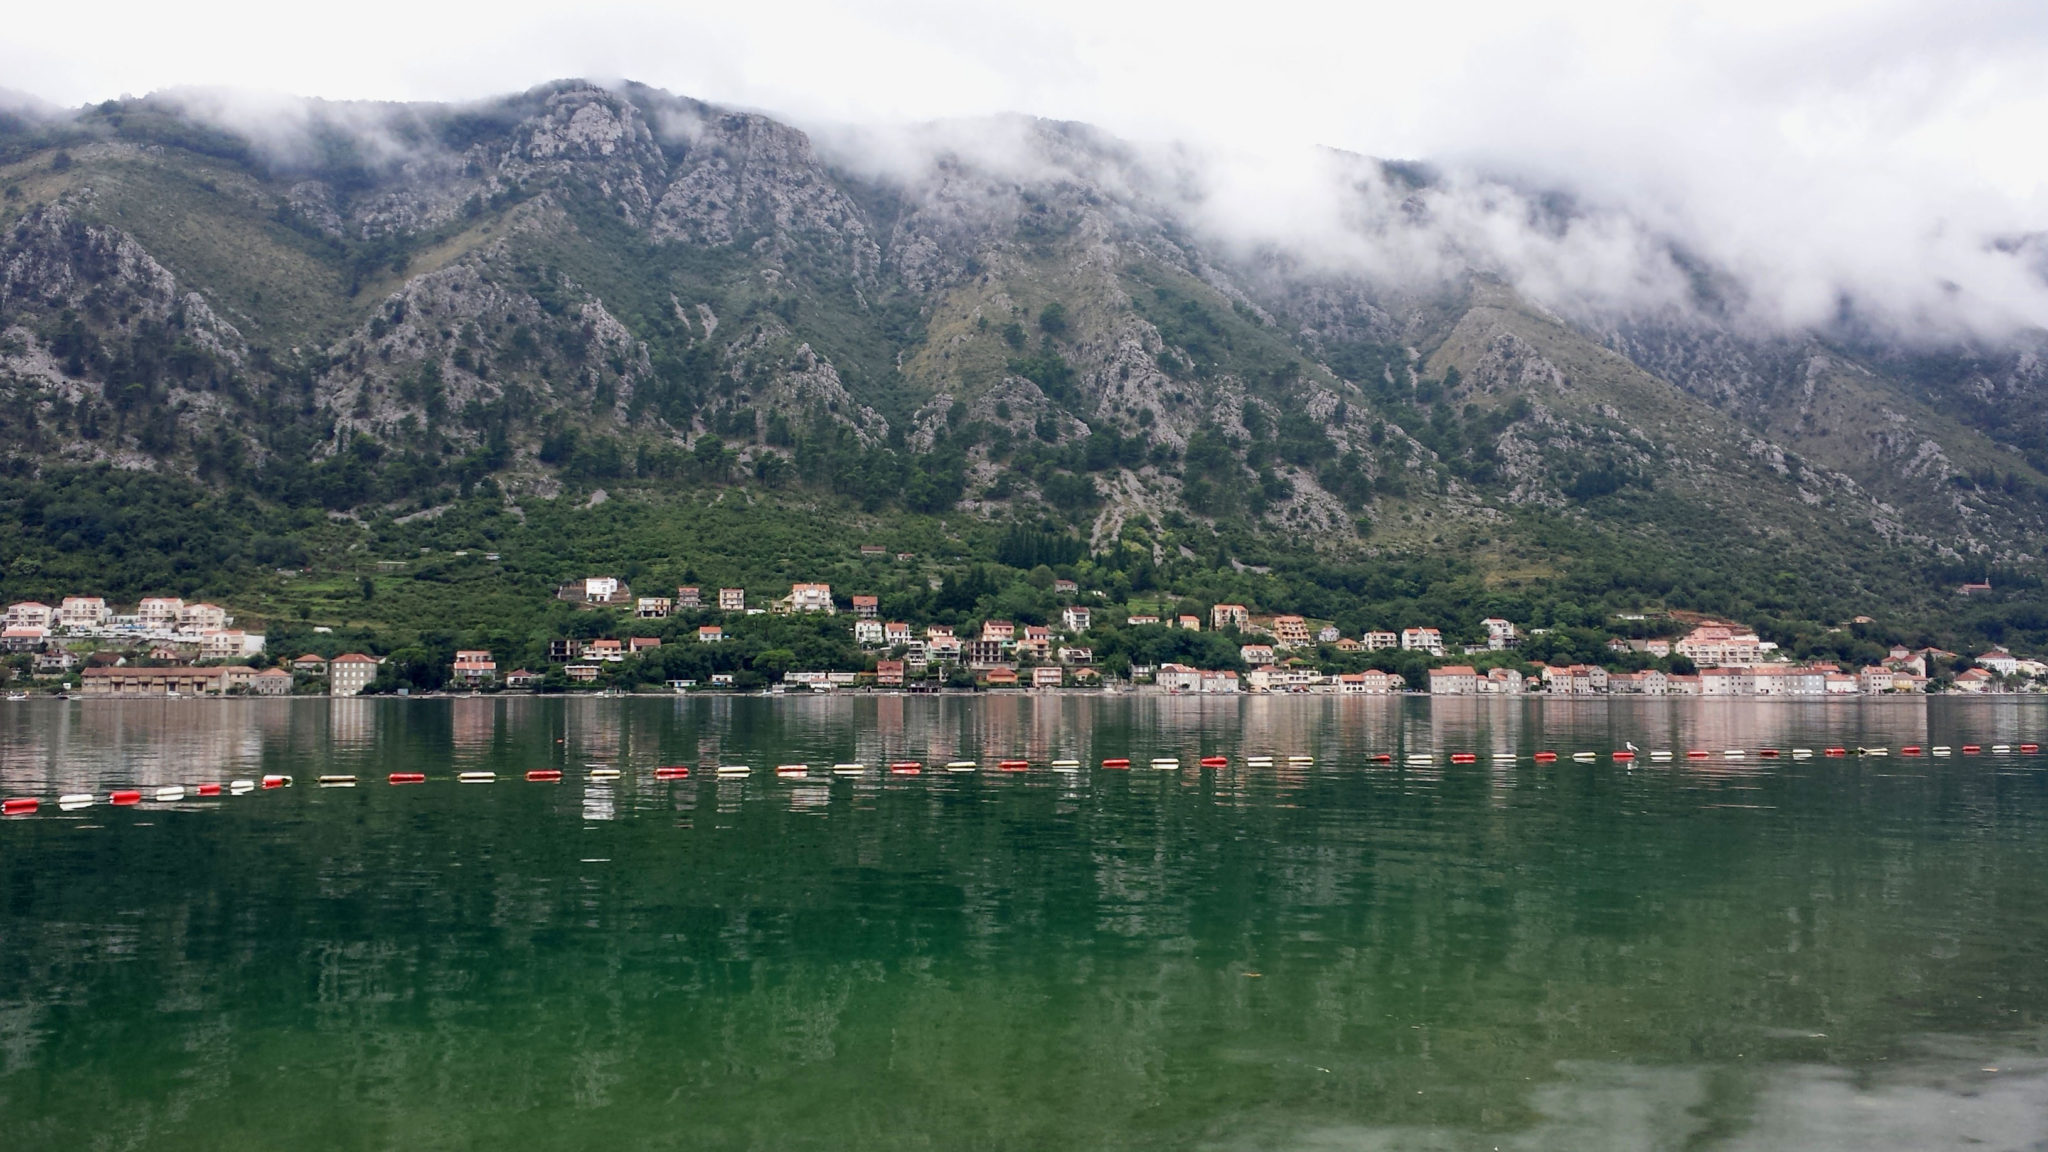 Hema_Montenegro_Kotor_Bay_Mountains